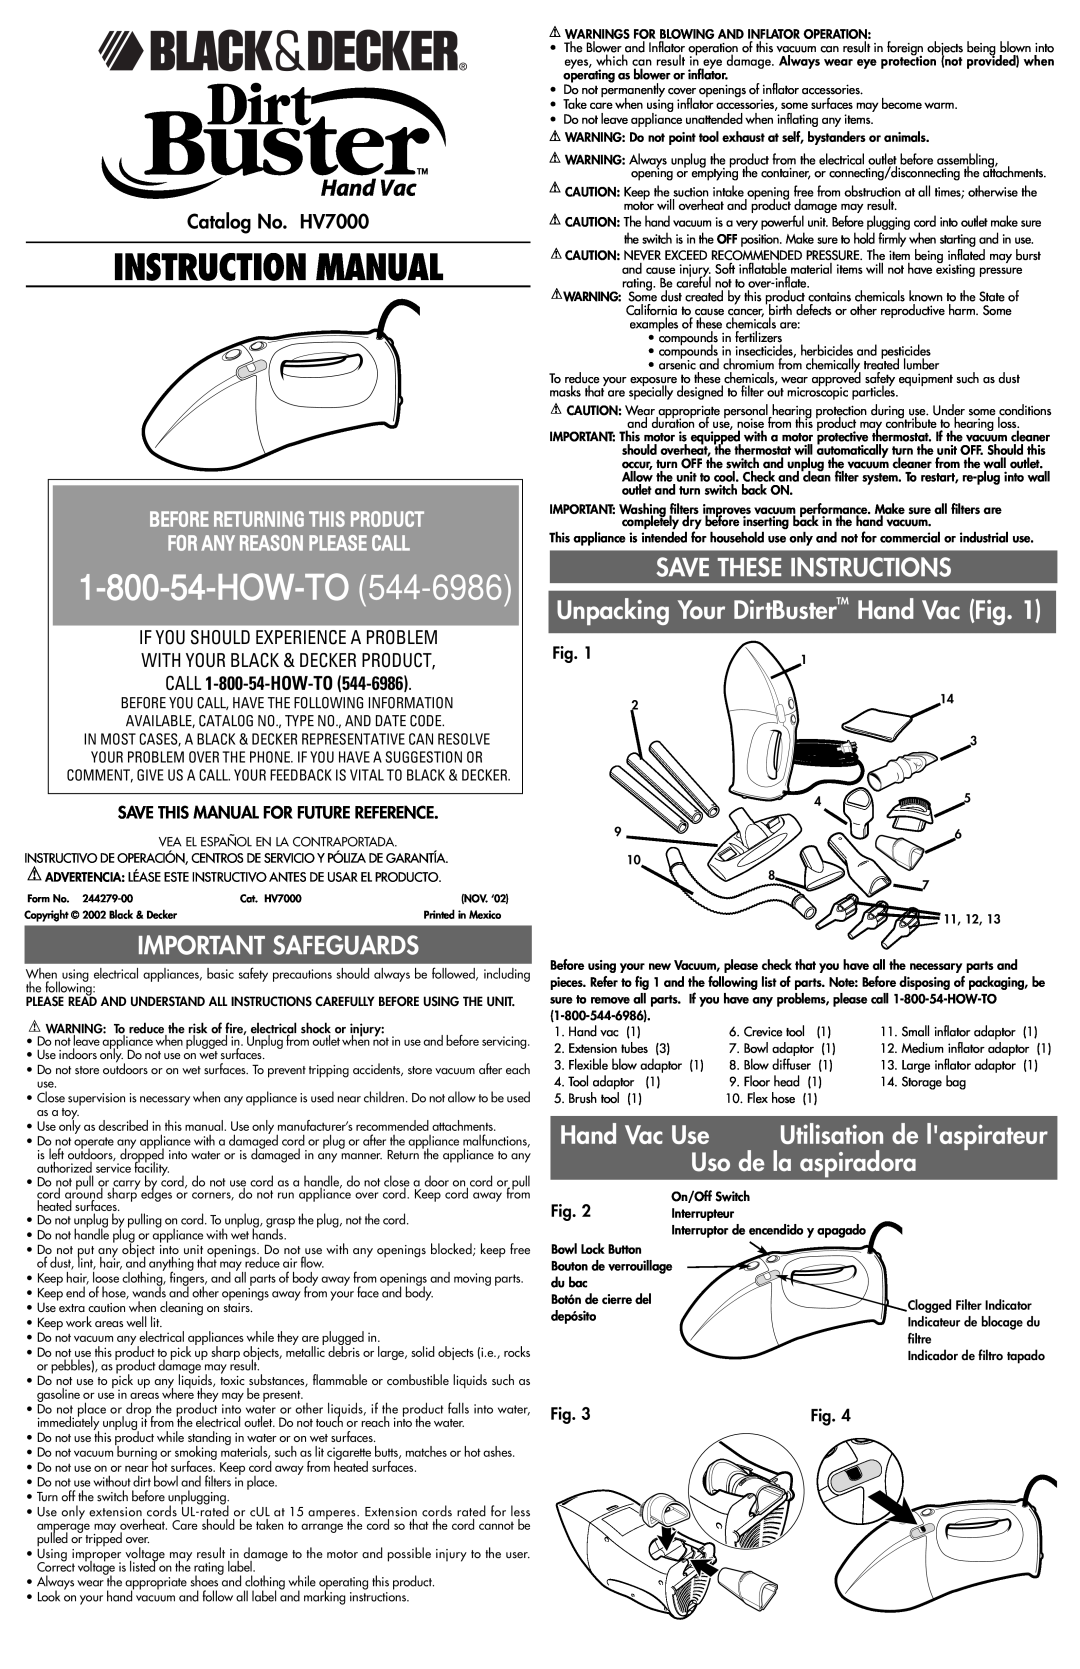 Black & Decker instruction manual Important Safeguards, Hand Vac Use, Uso de la aspiradora, Catalog No. HV7000 